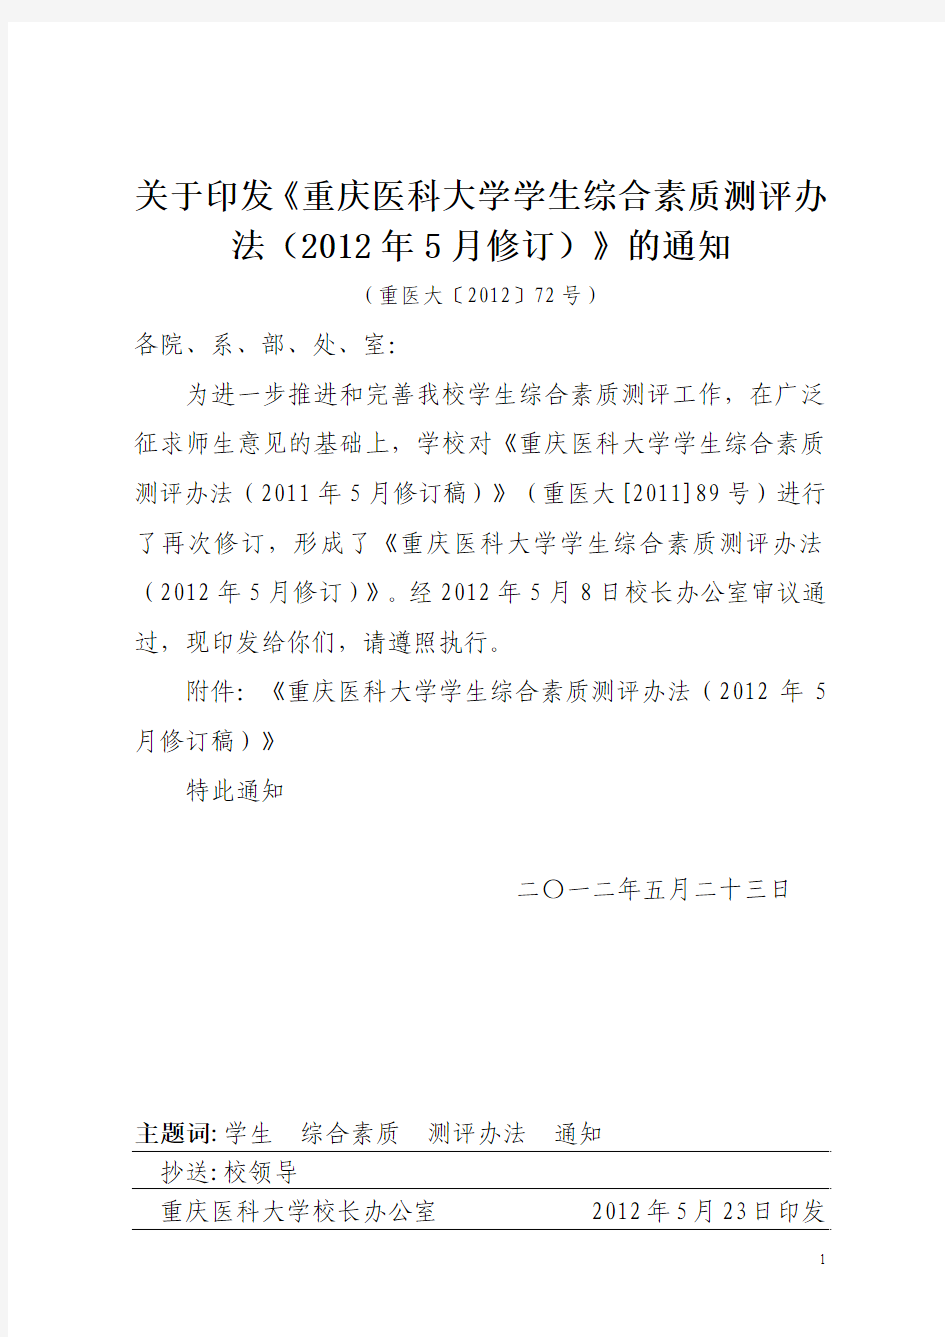 14重庆医科大学学生综合素质测评办法(2012年5月修订)(2012.5.9)